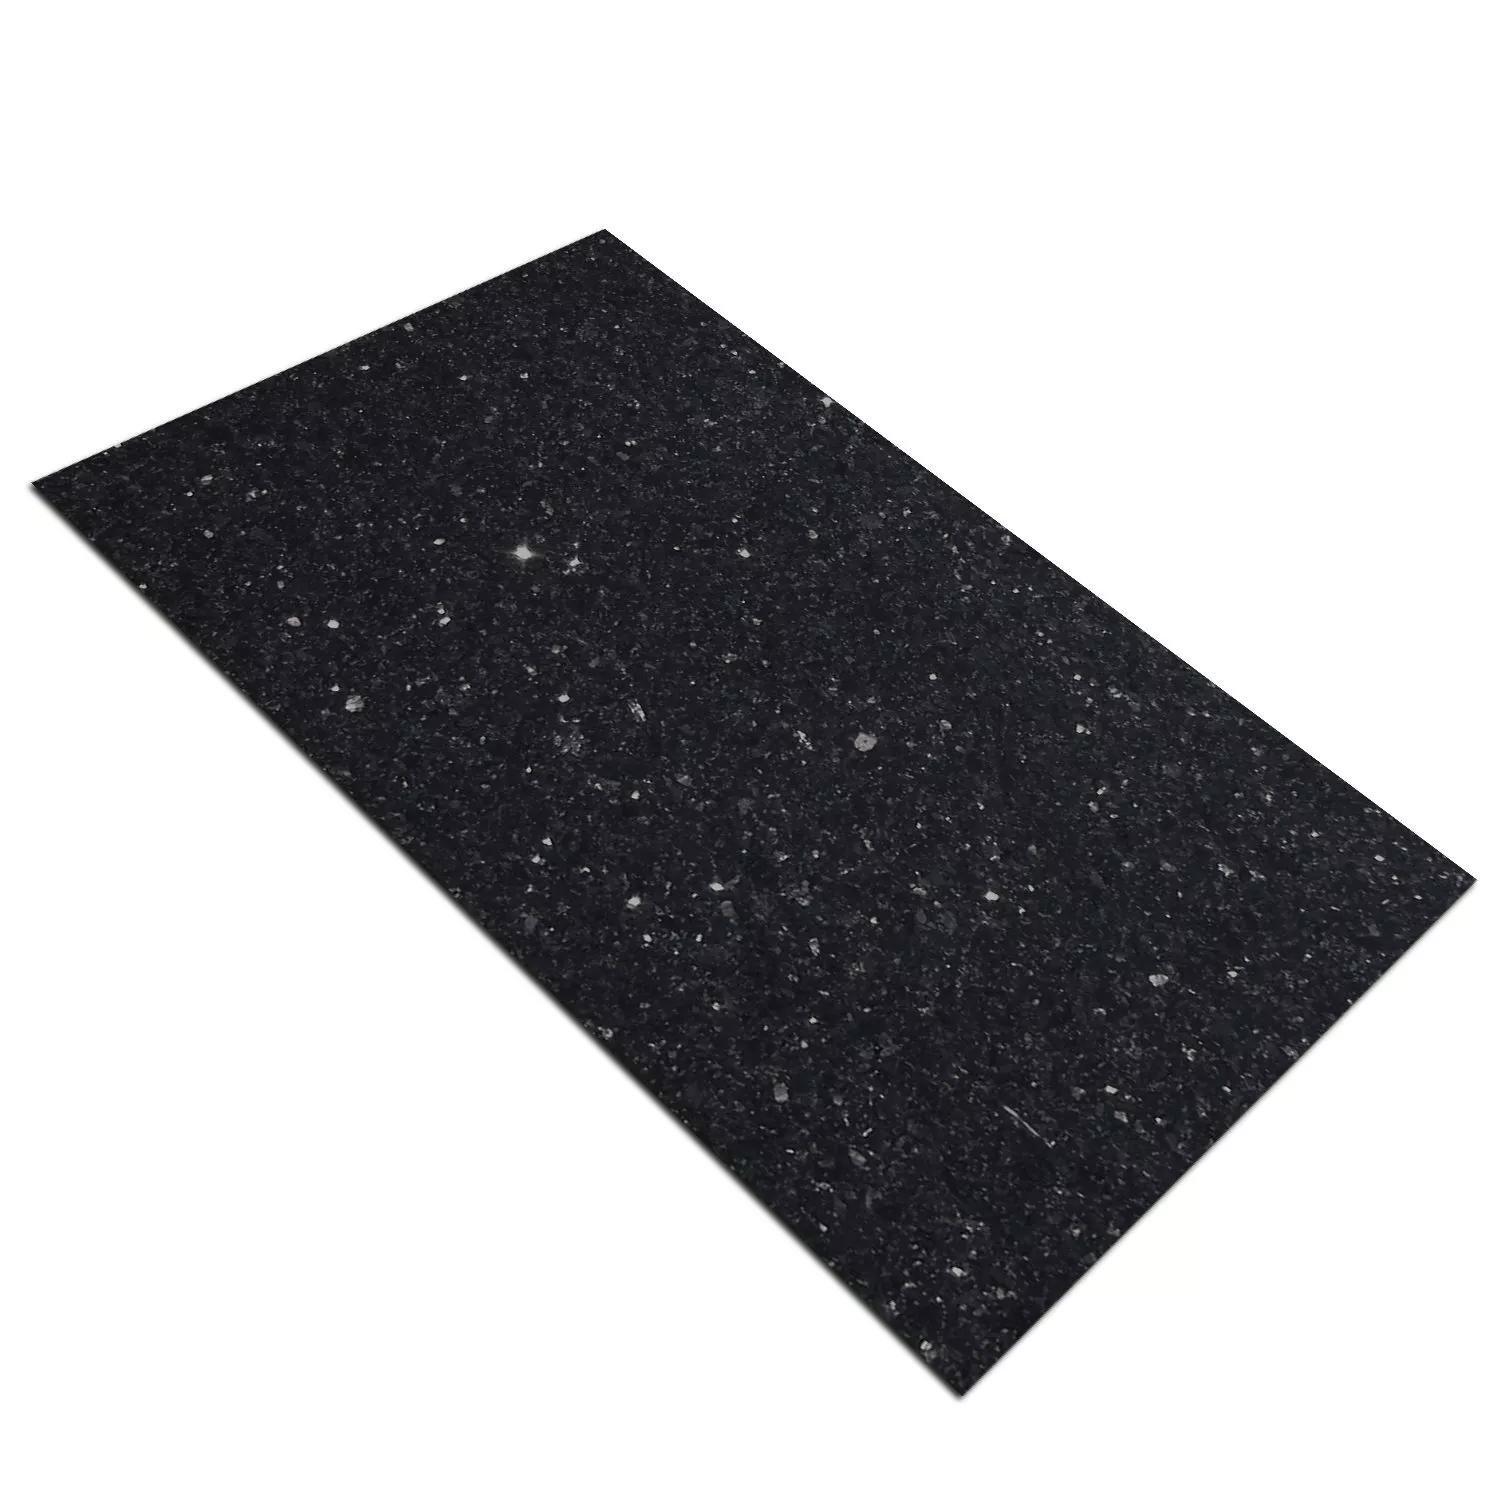 Campione Pietra Naturale Piastrella Granito Star Galaxy Lucidato 30,5x61cm